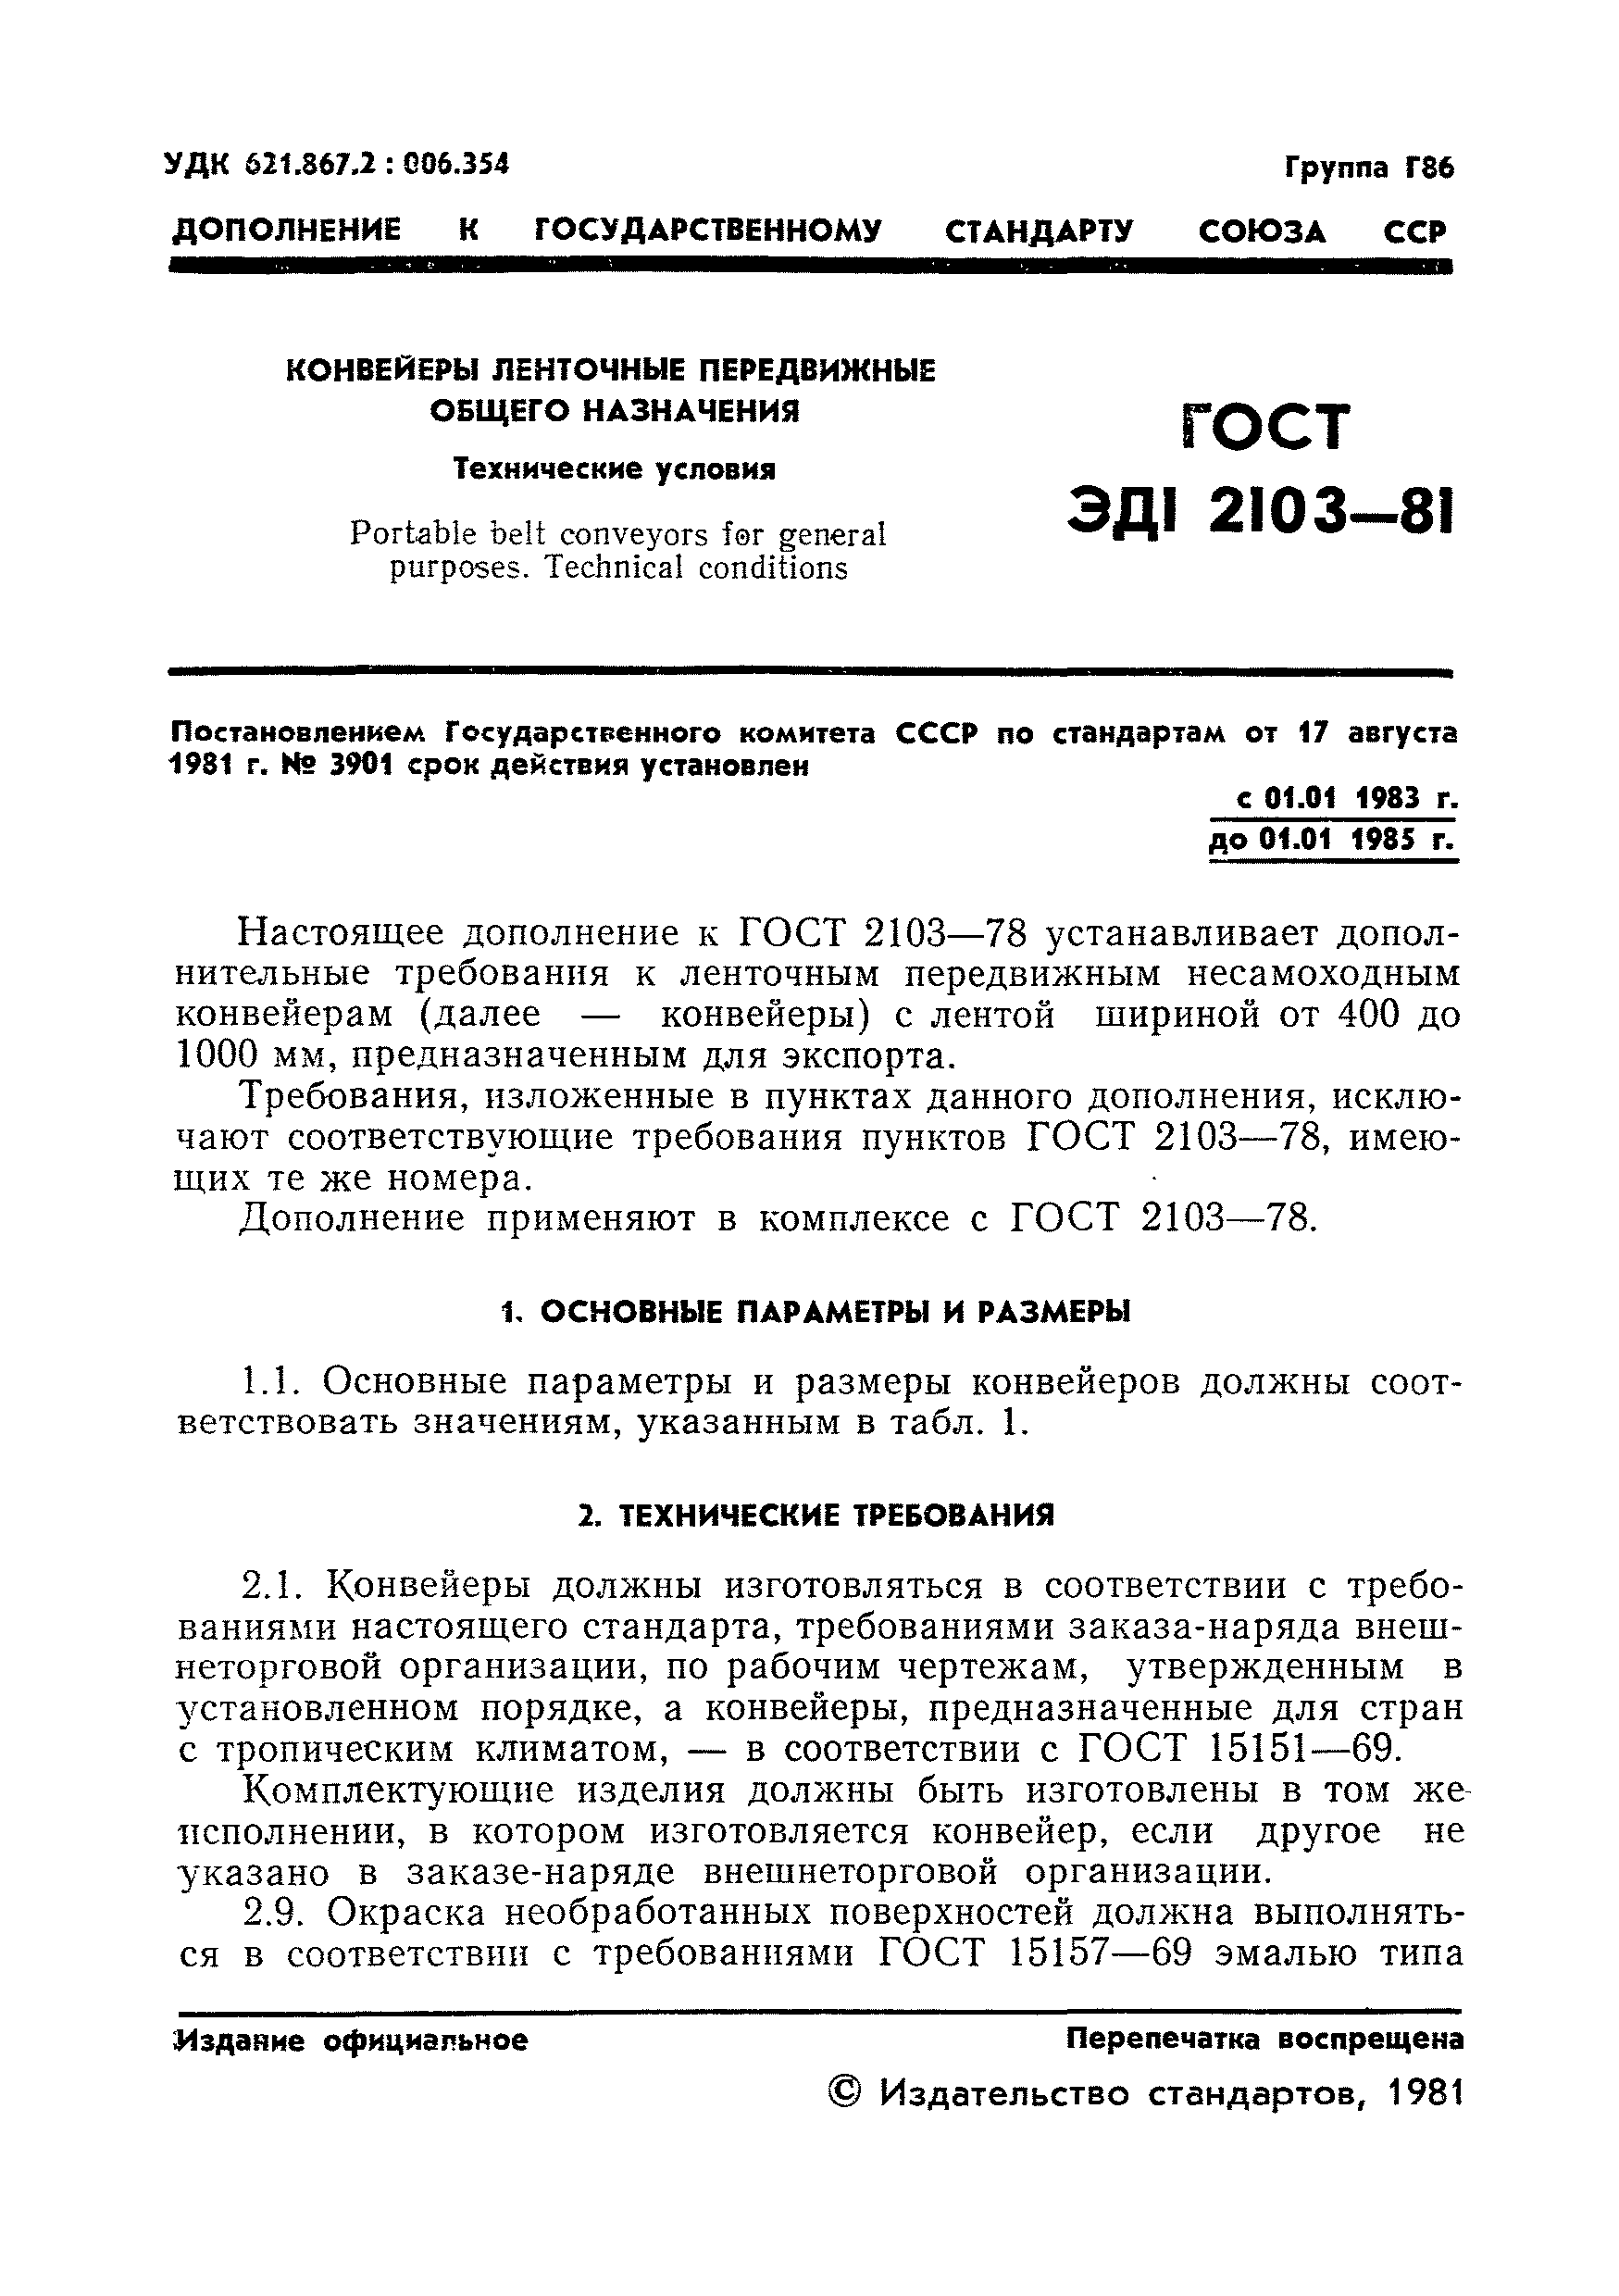 ГОСТ ЭД1 2103-81